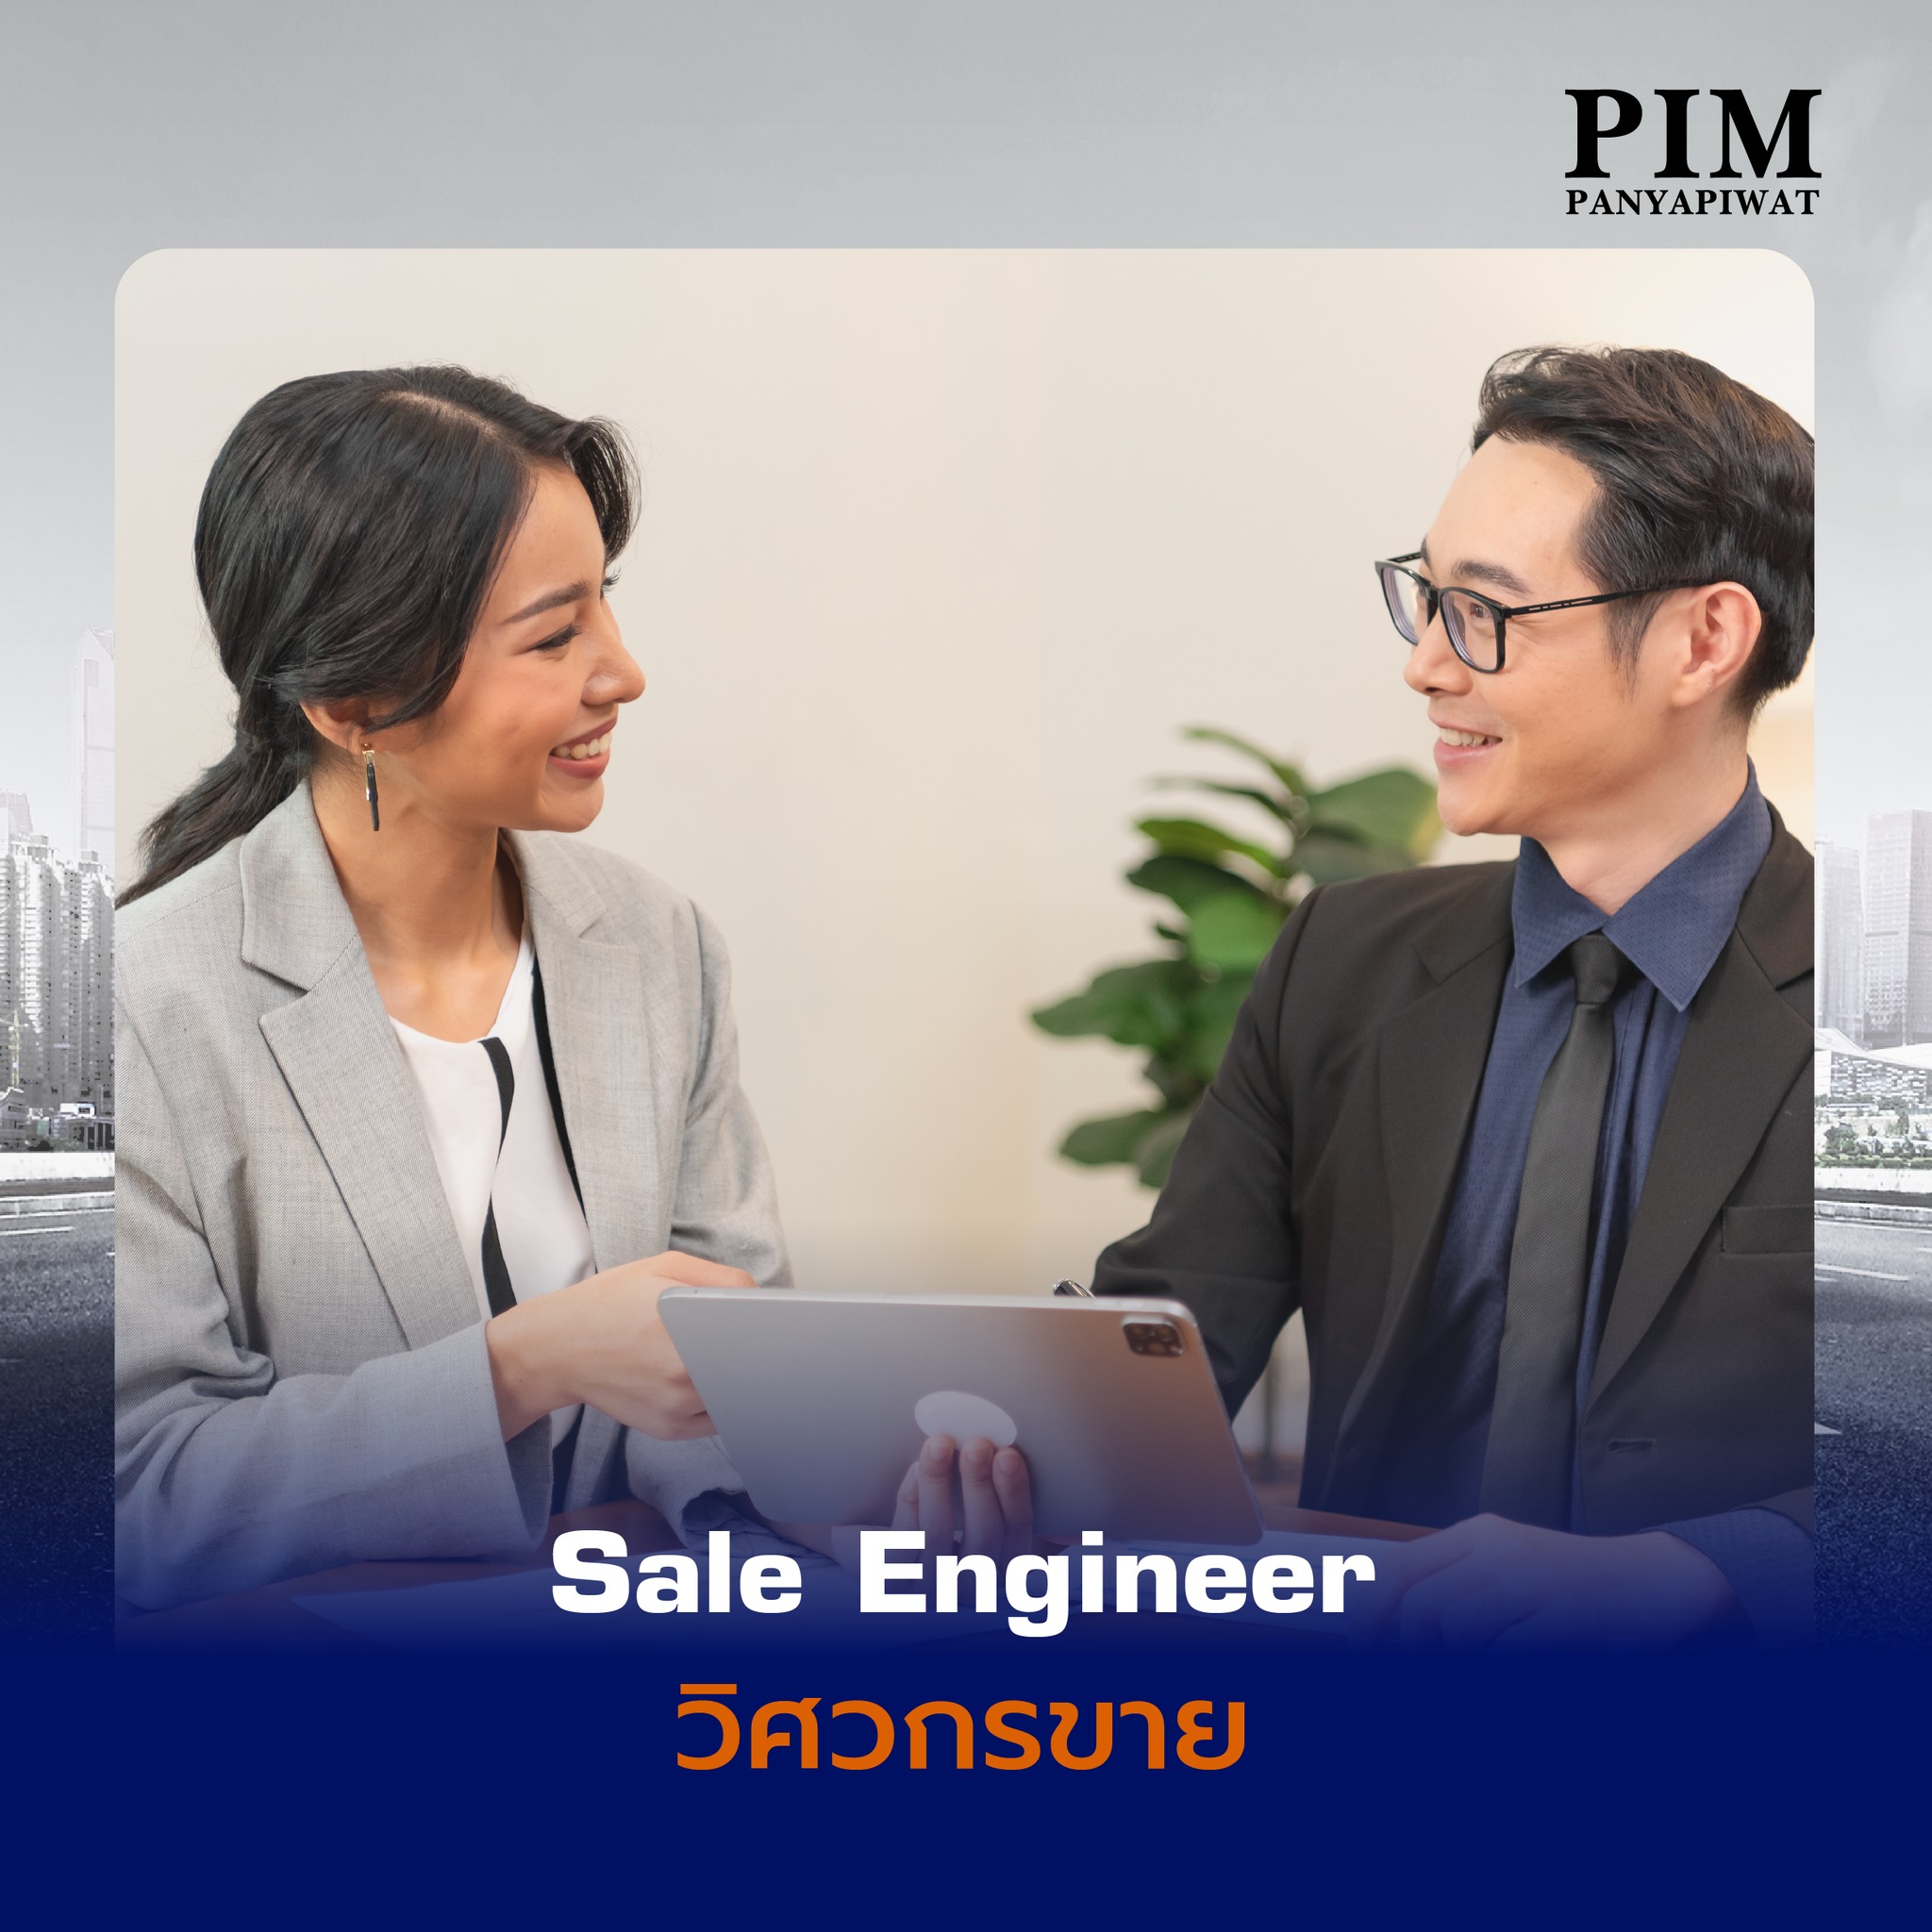 Sale Engineer วิศวกรขาย